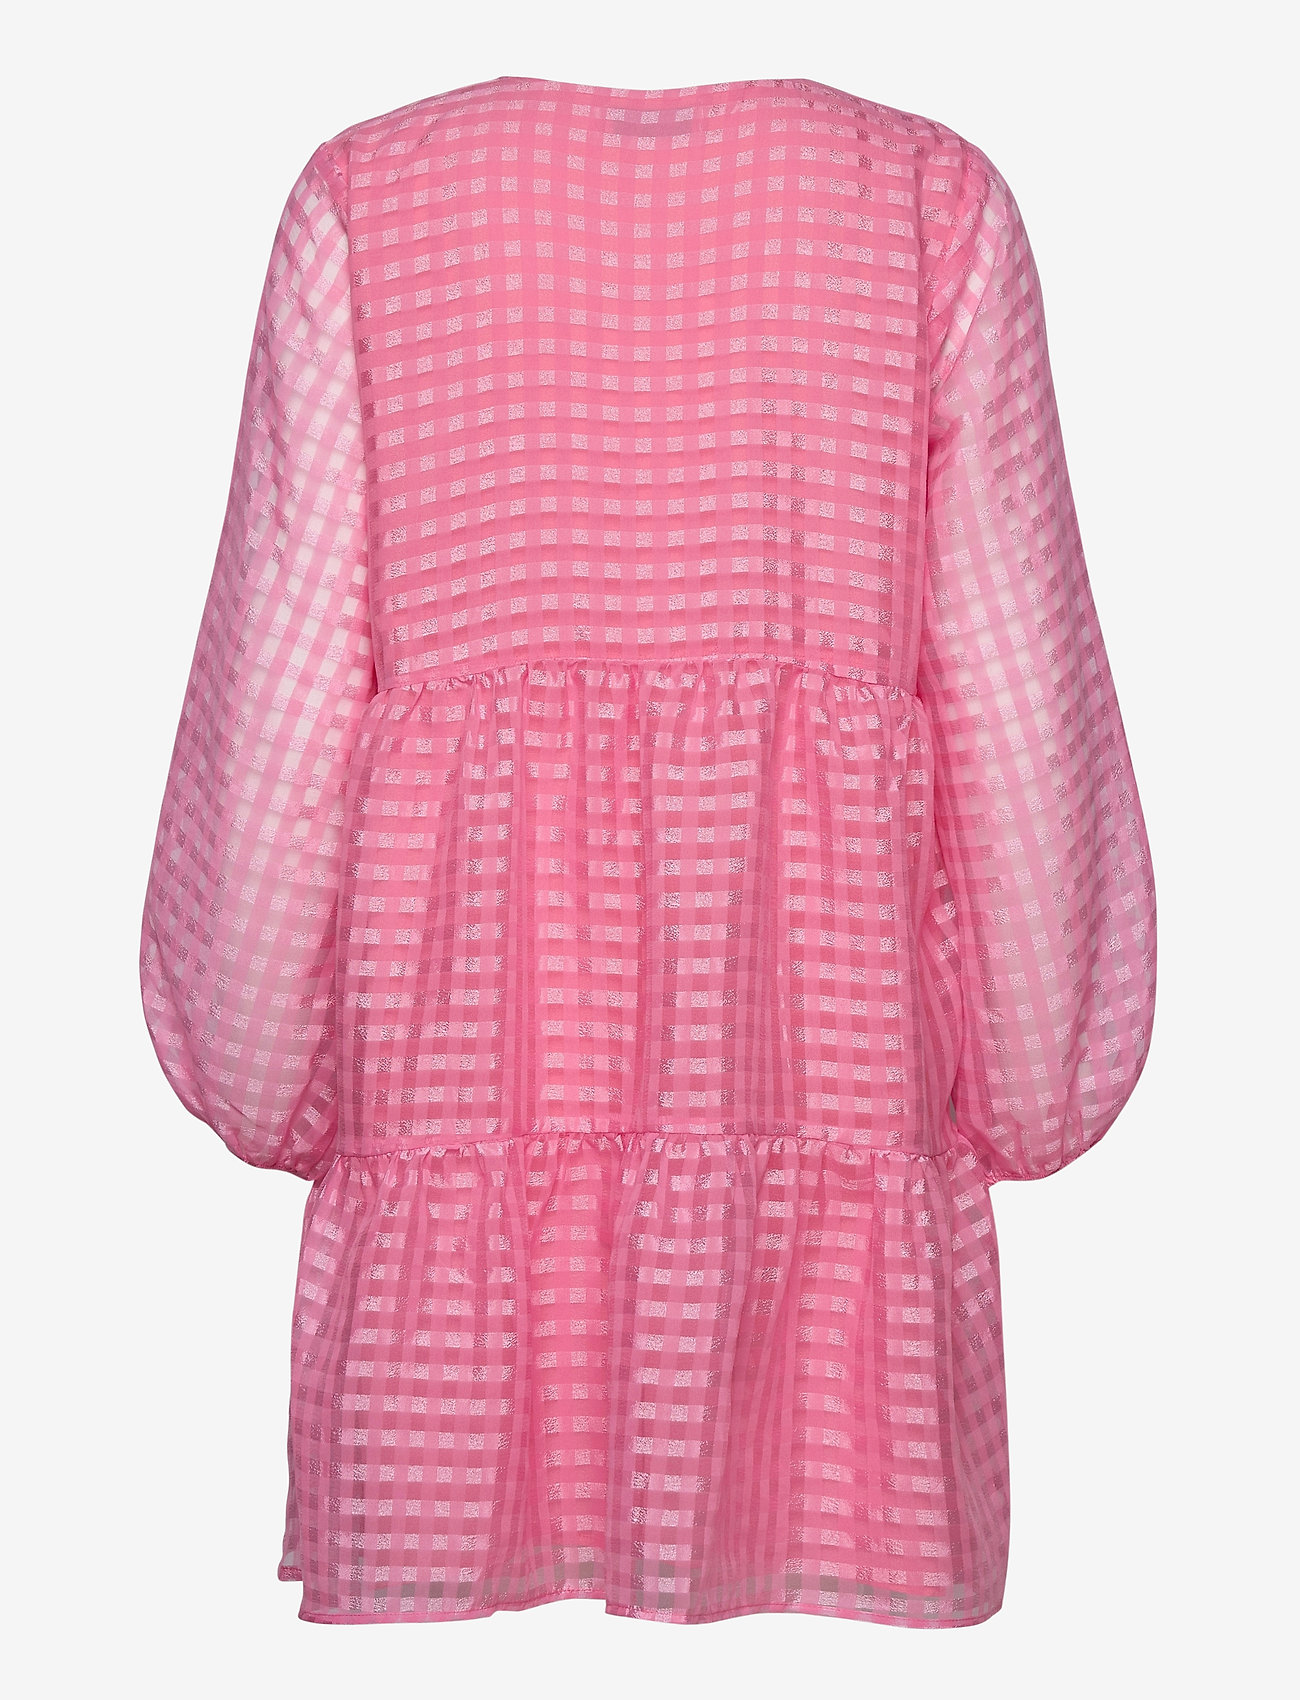 Modström - Tatty dress - trumpos suknelės - taffy pink - 1